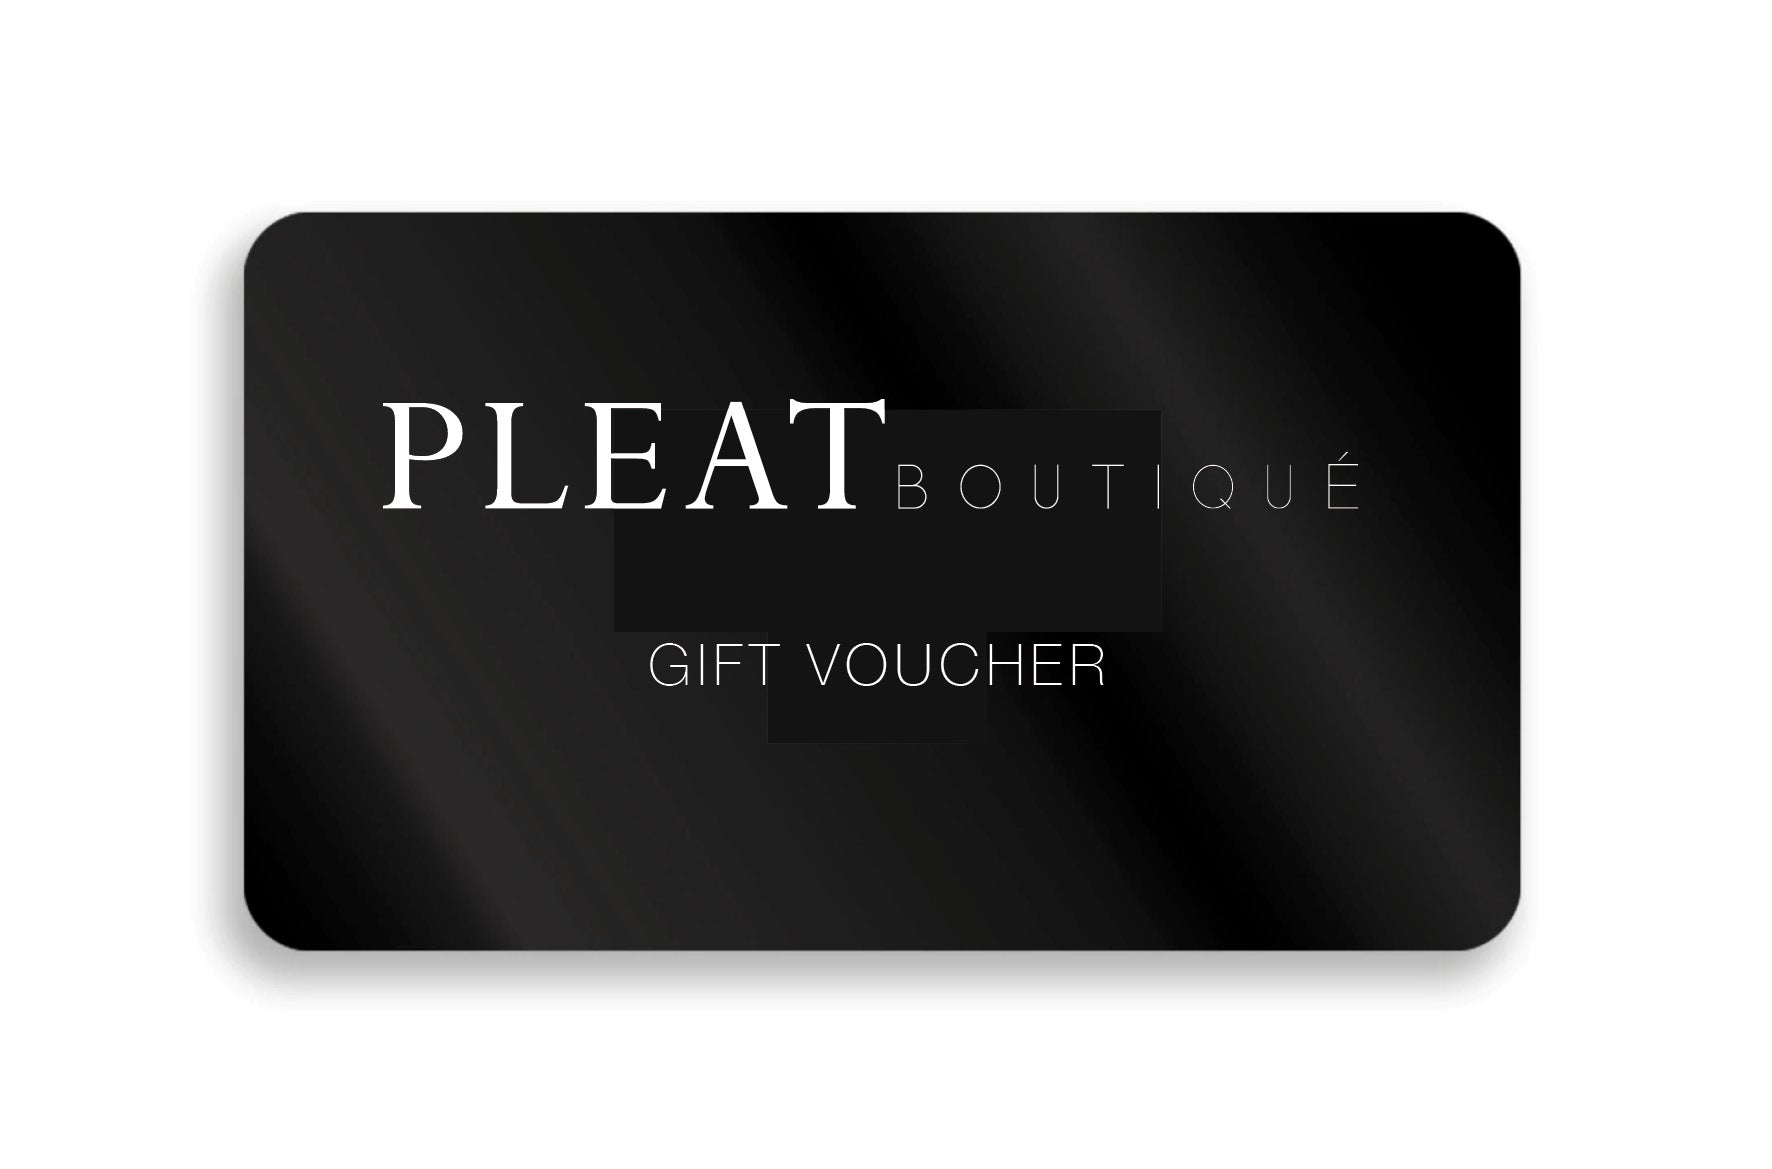 Digital Gift Voucher - Pleat Boutique